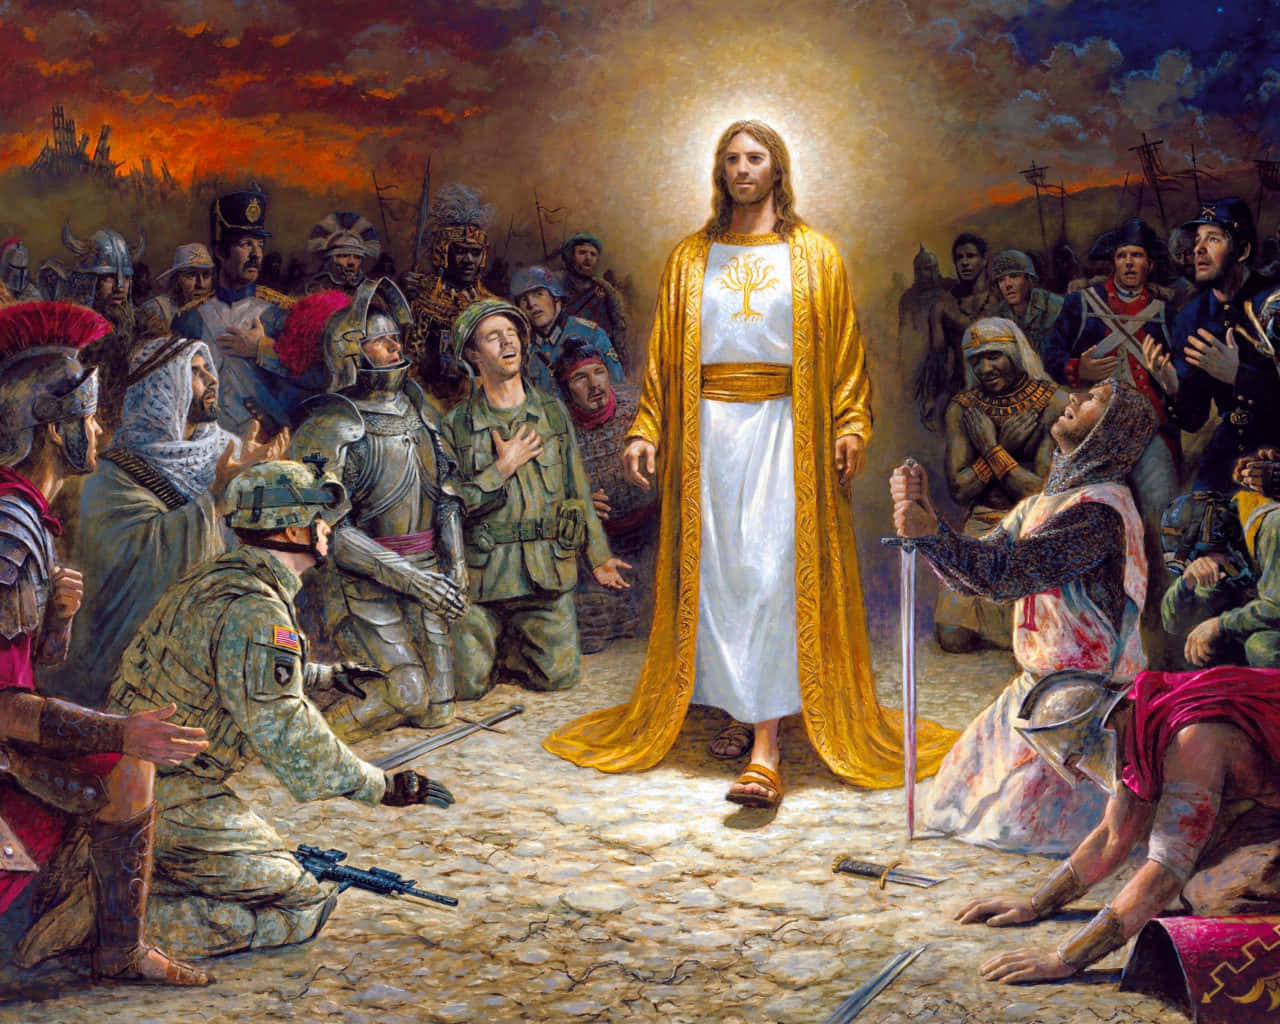 Jesusist König Und Läuft Mit Seinen Jüngern. Wallpaper